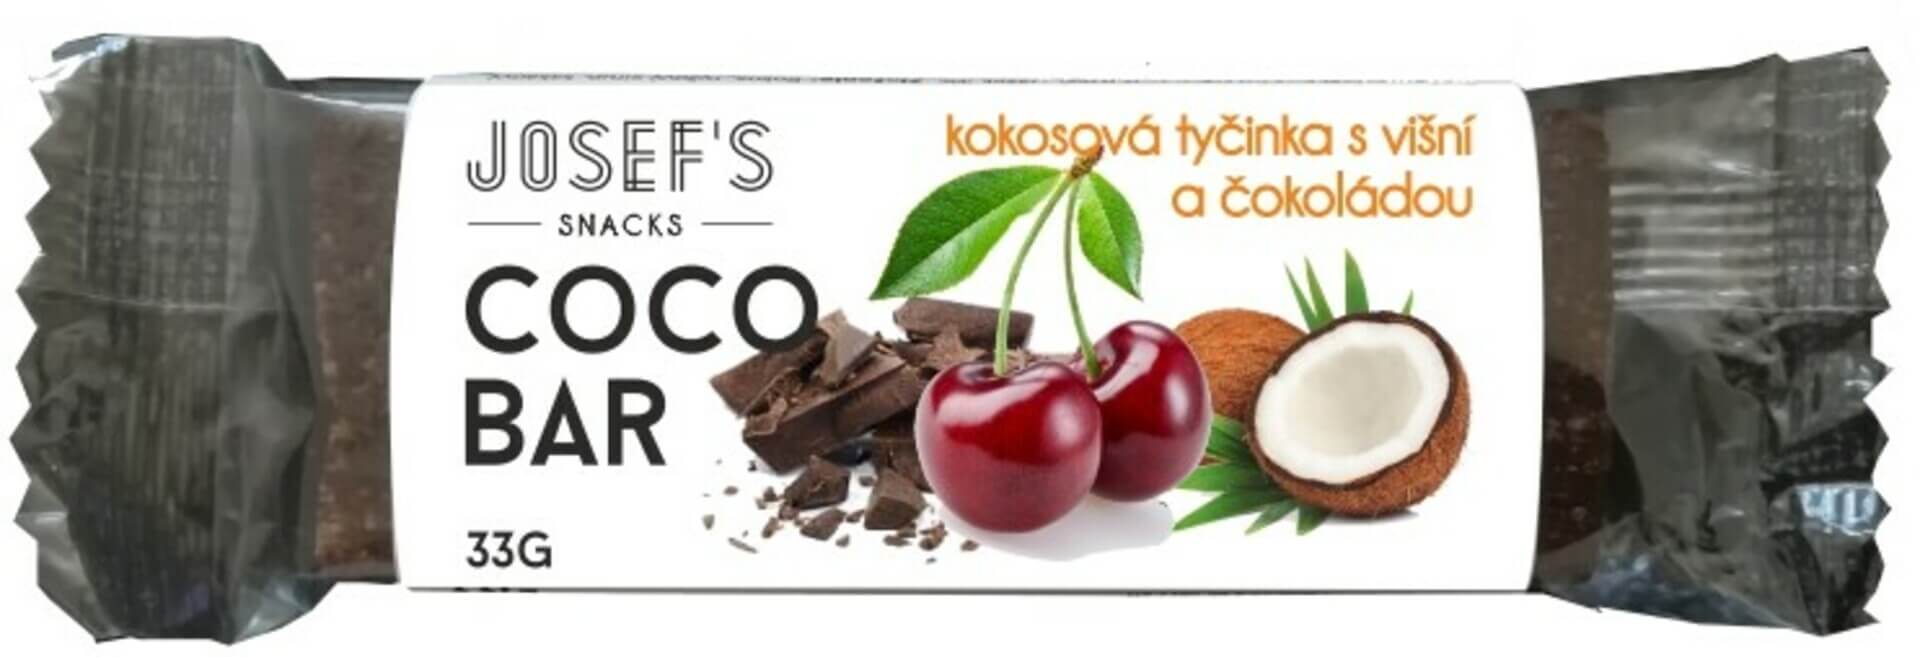 E-shop Josef 's snacks Kokosová tyčinka višňa a čokoláda 33 g